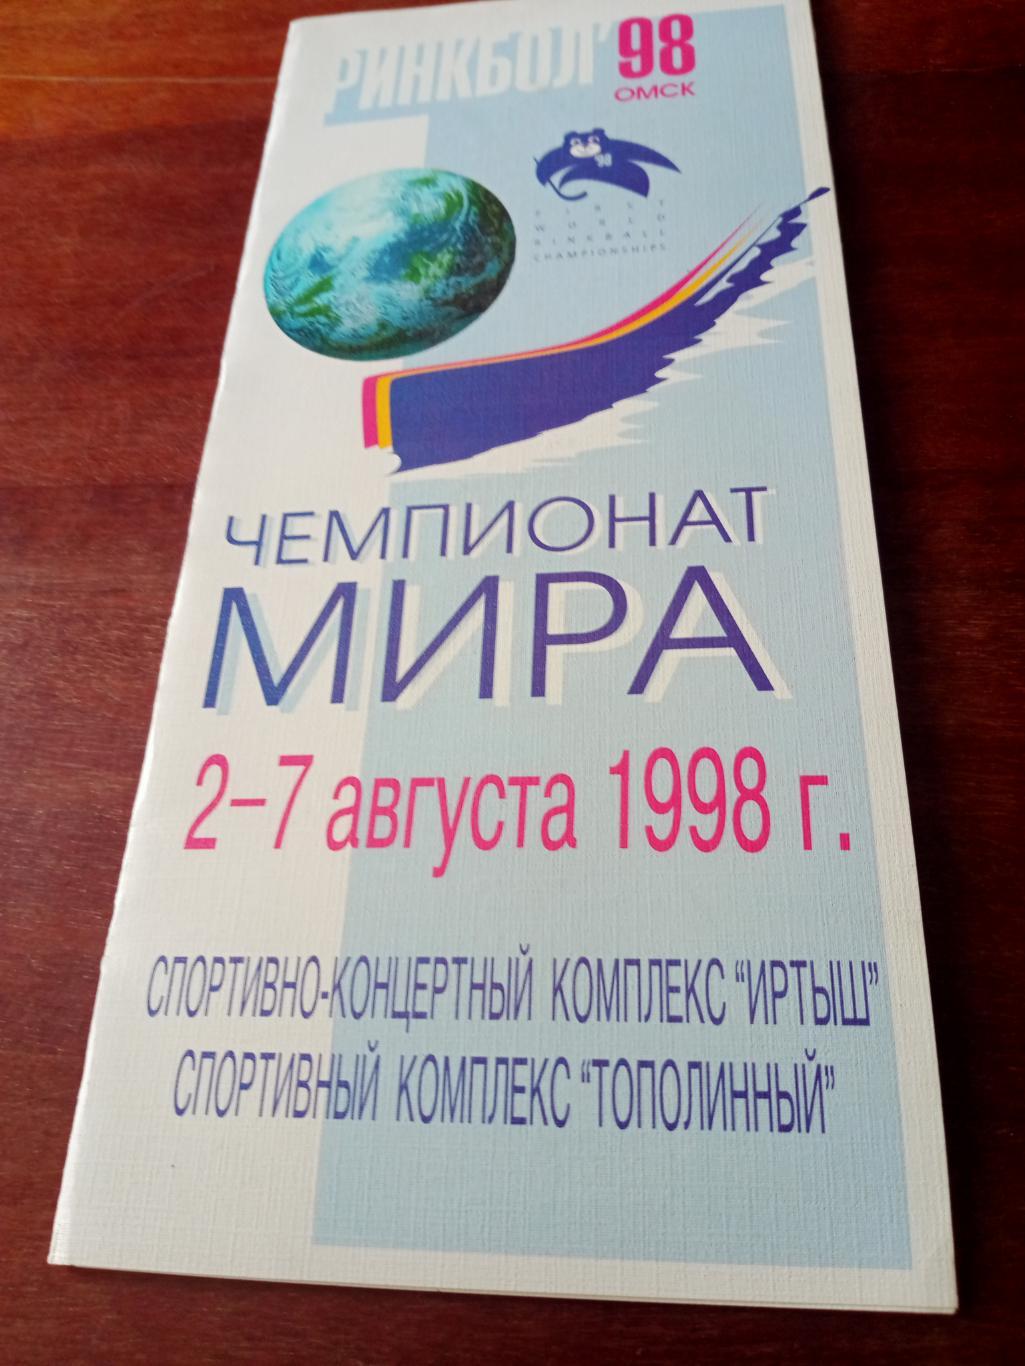 Чемпионат мира по ринкболу. Омск. 2 - 7 августа 1998 год